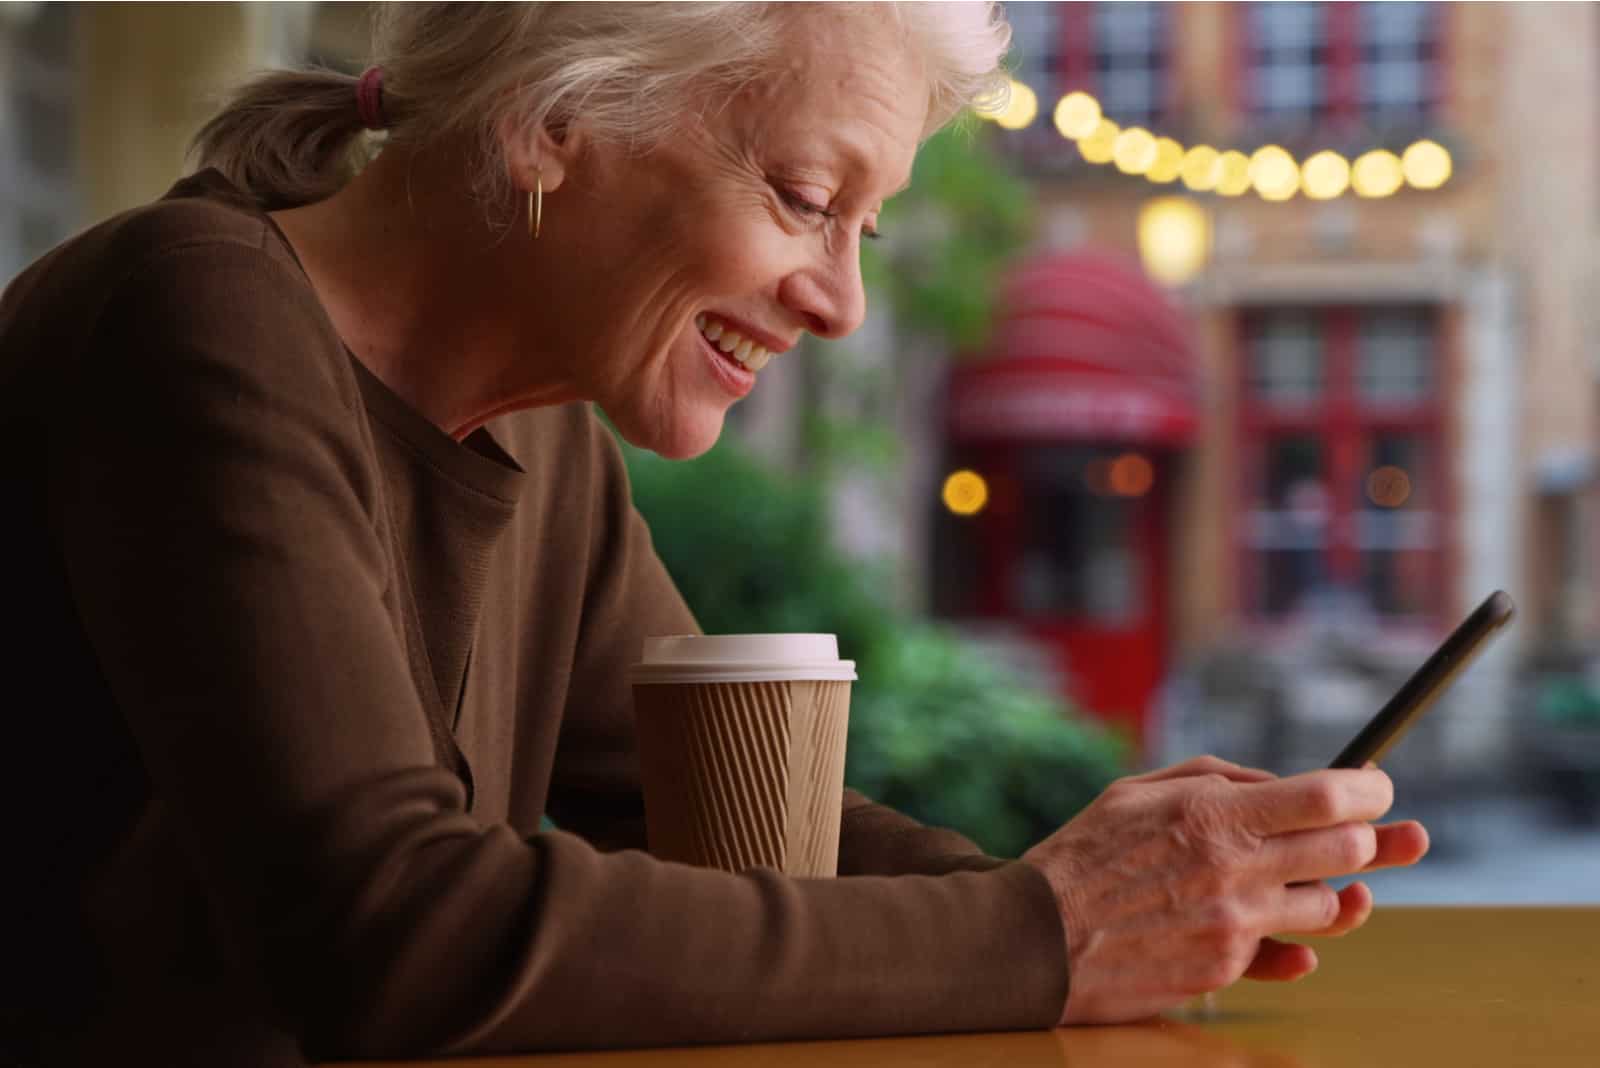 Femme plus âgée assise au café en train de boire du café et d'envoyer des SMS